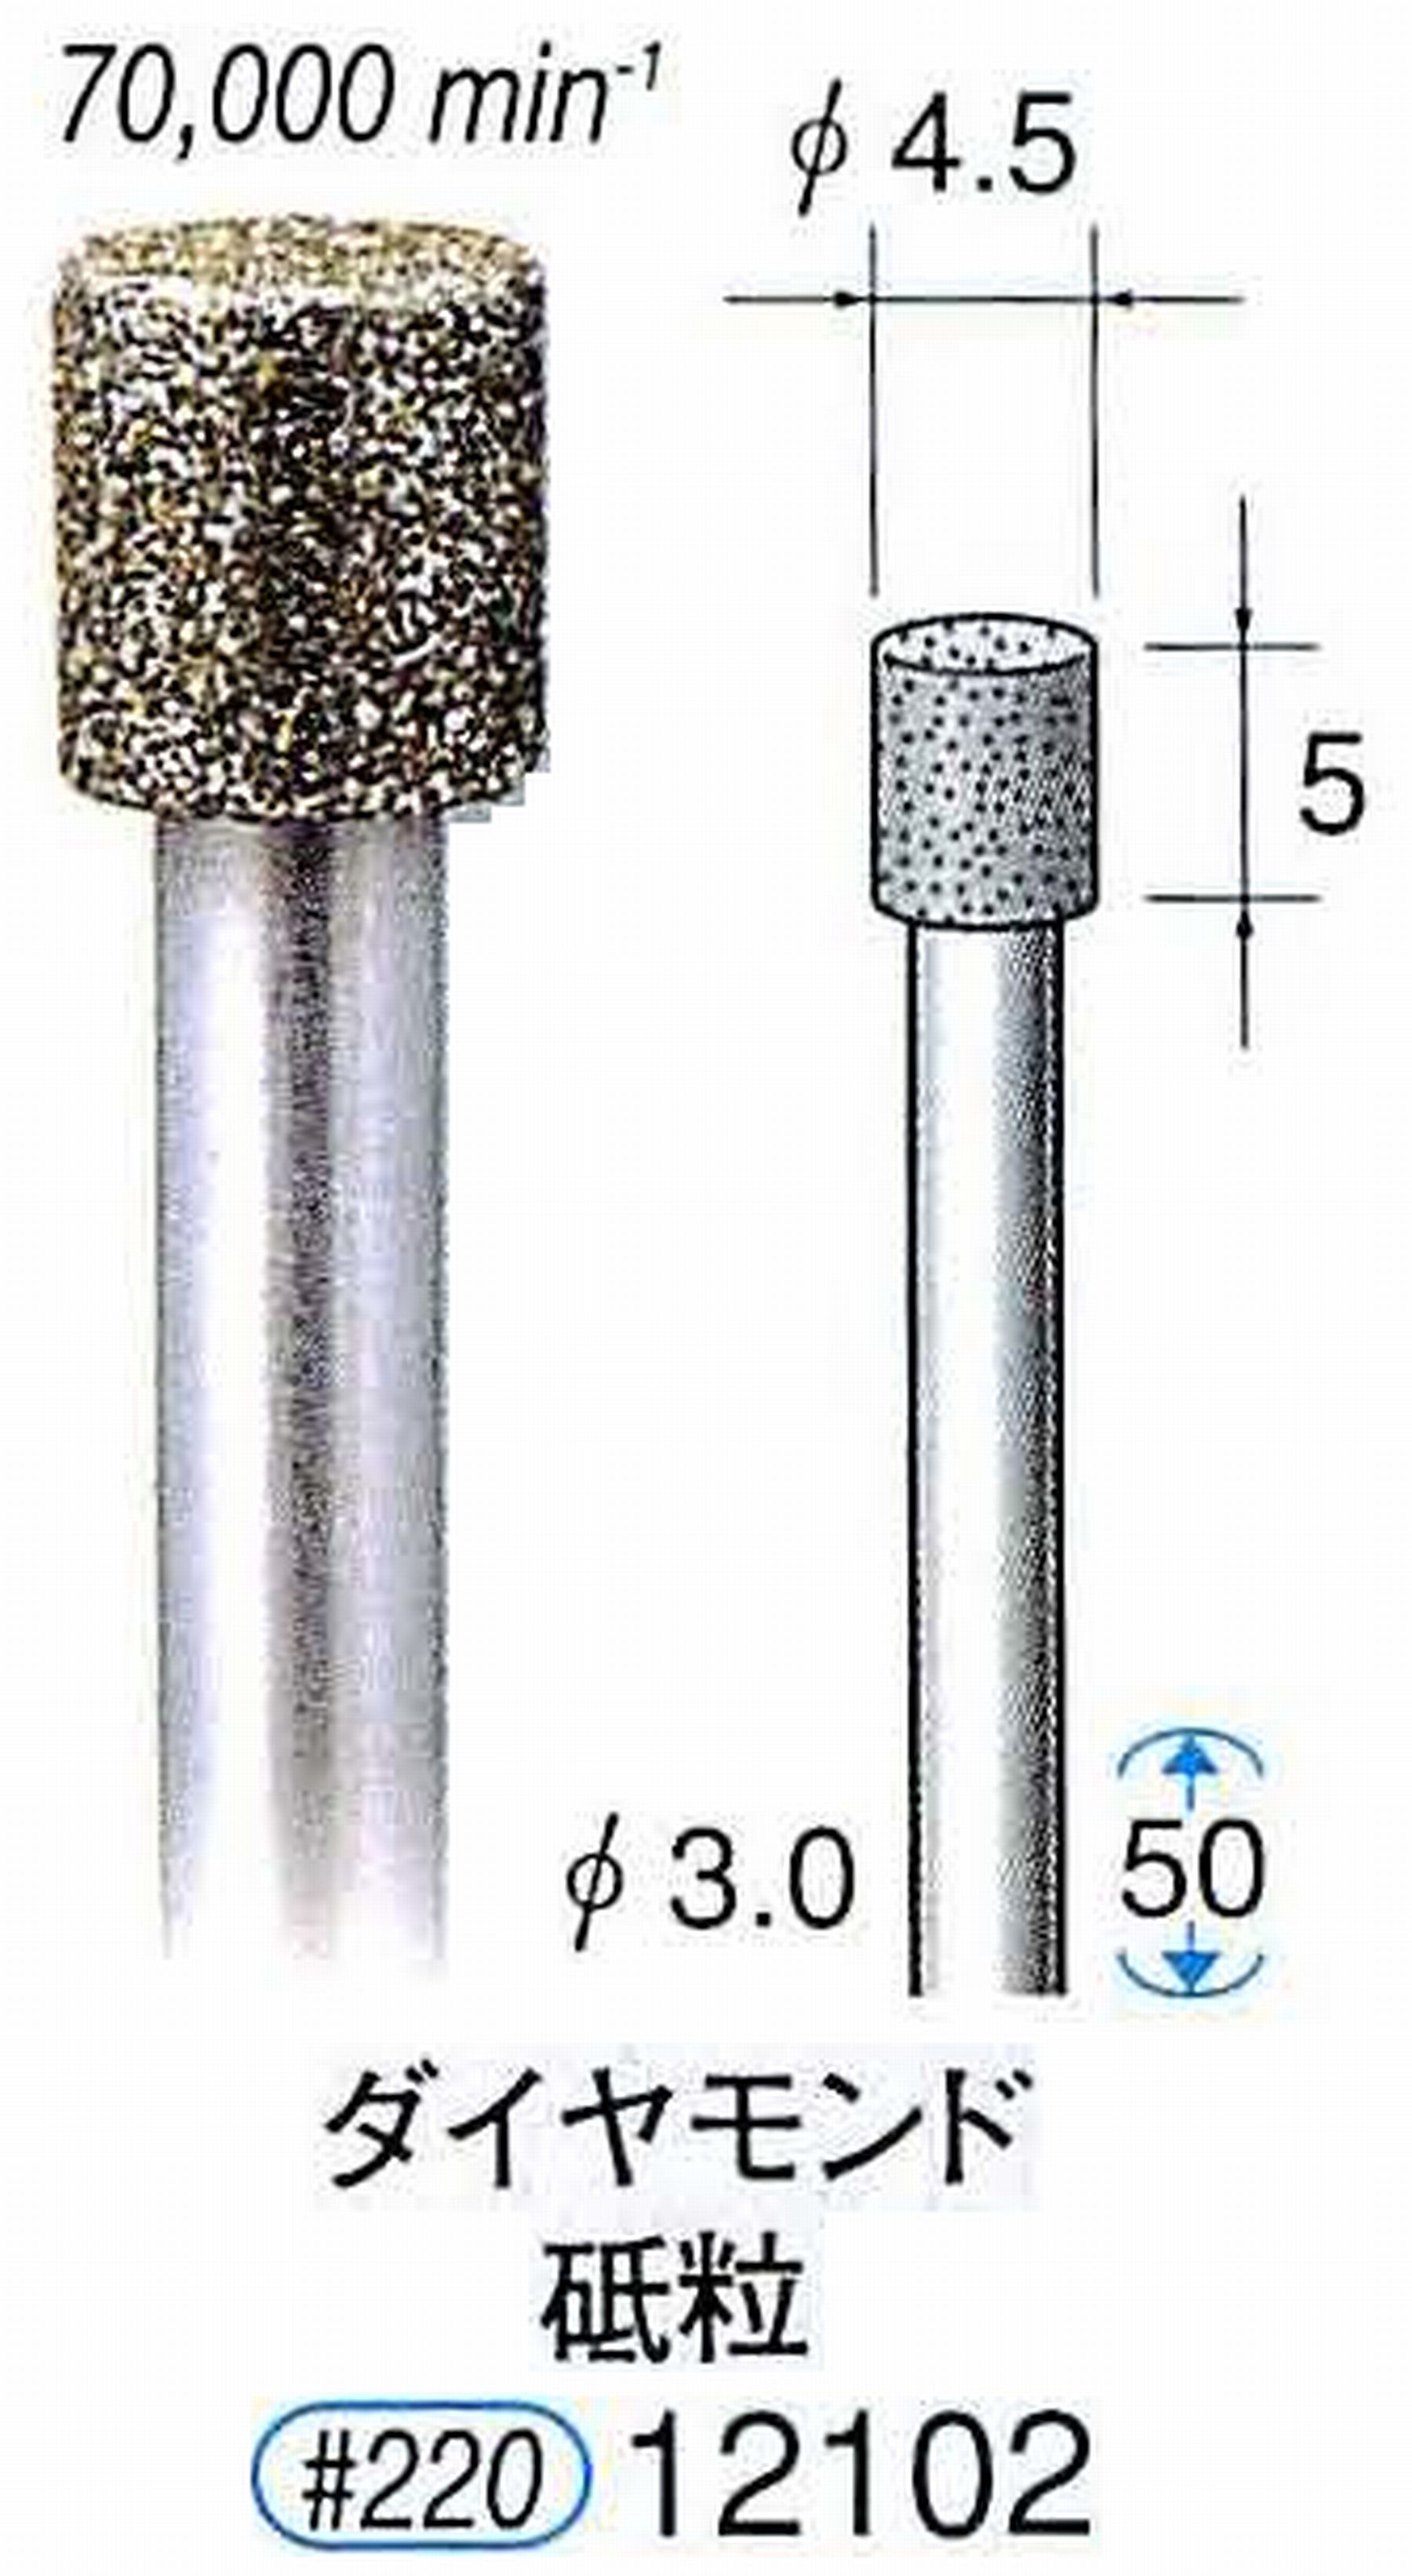 ナカニシ/NAKANISHI 電着ダイヤモンド ダイヤモンド砥粒 軸径(シャンク)φ3.0mm 12102